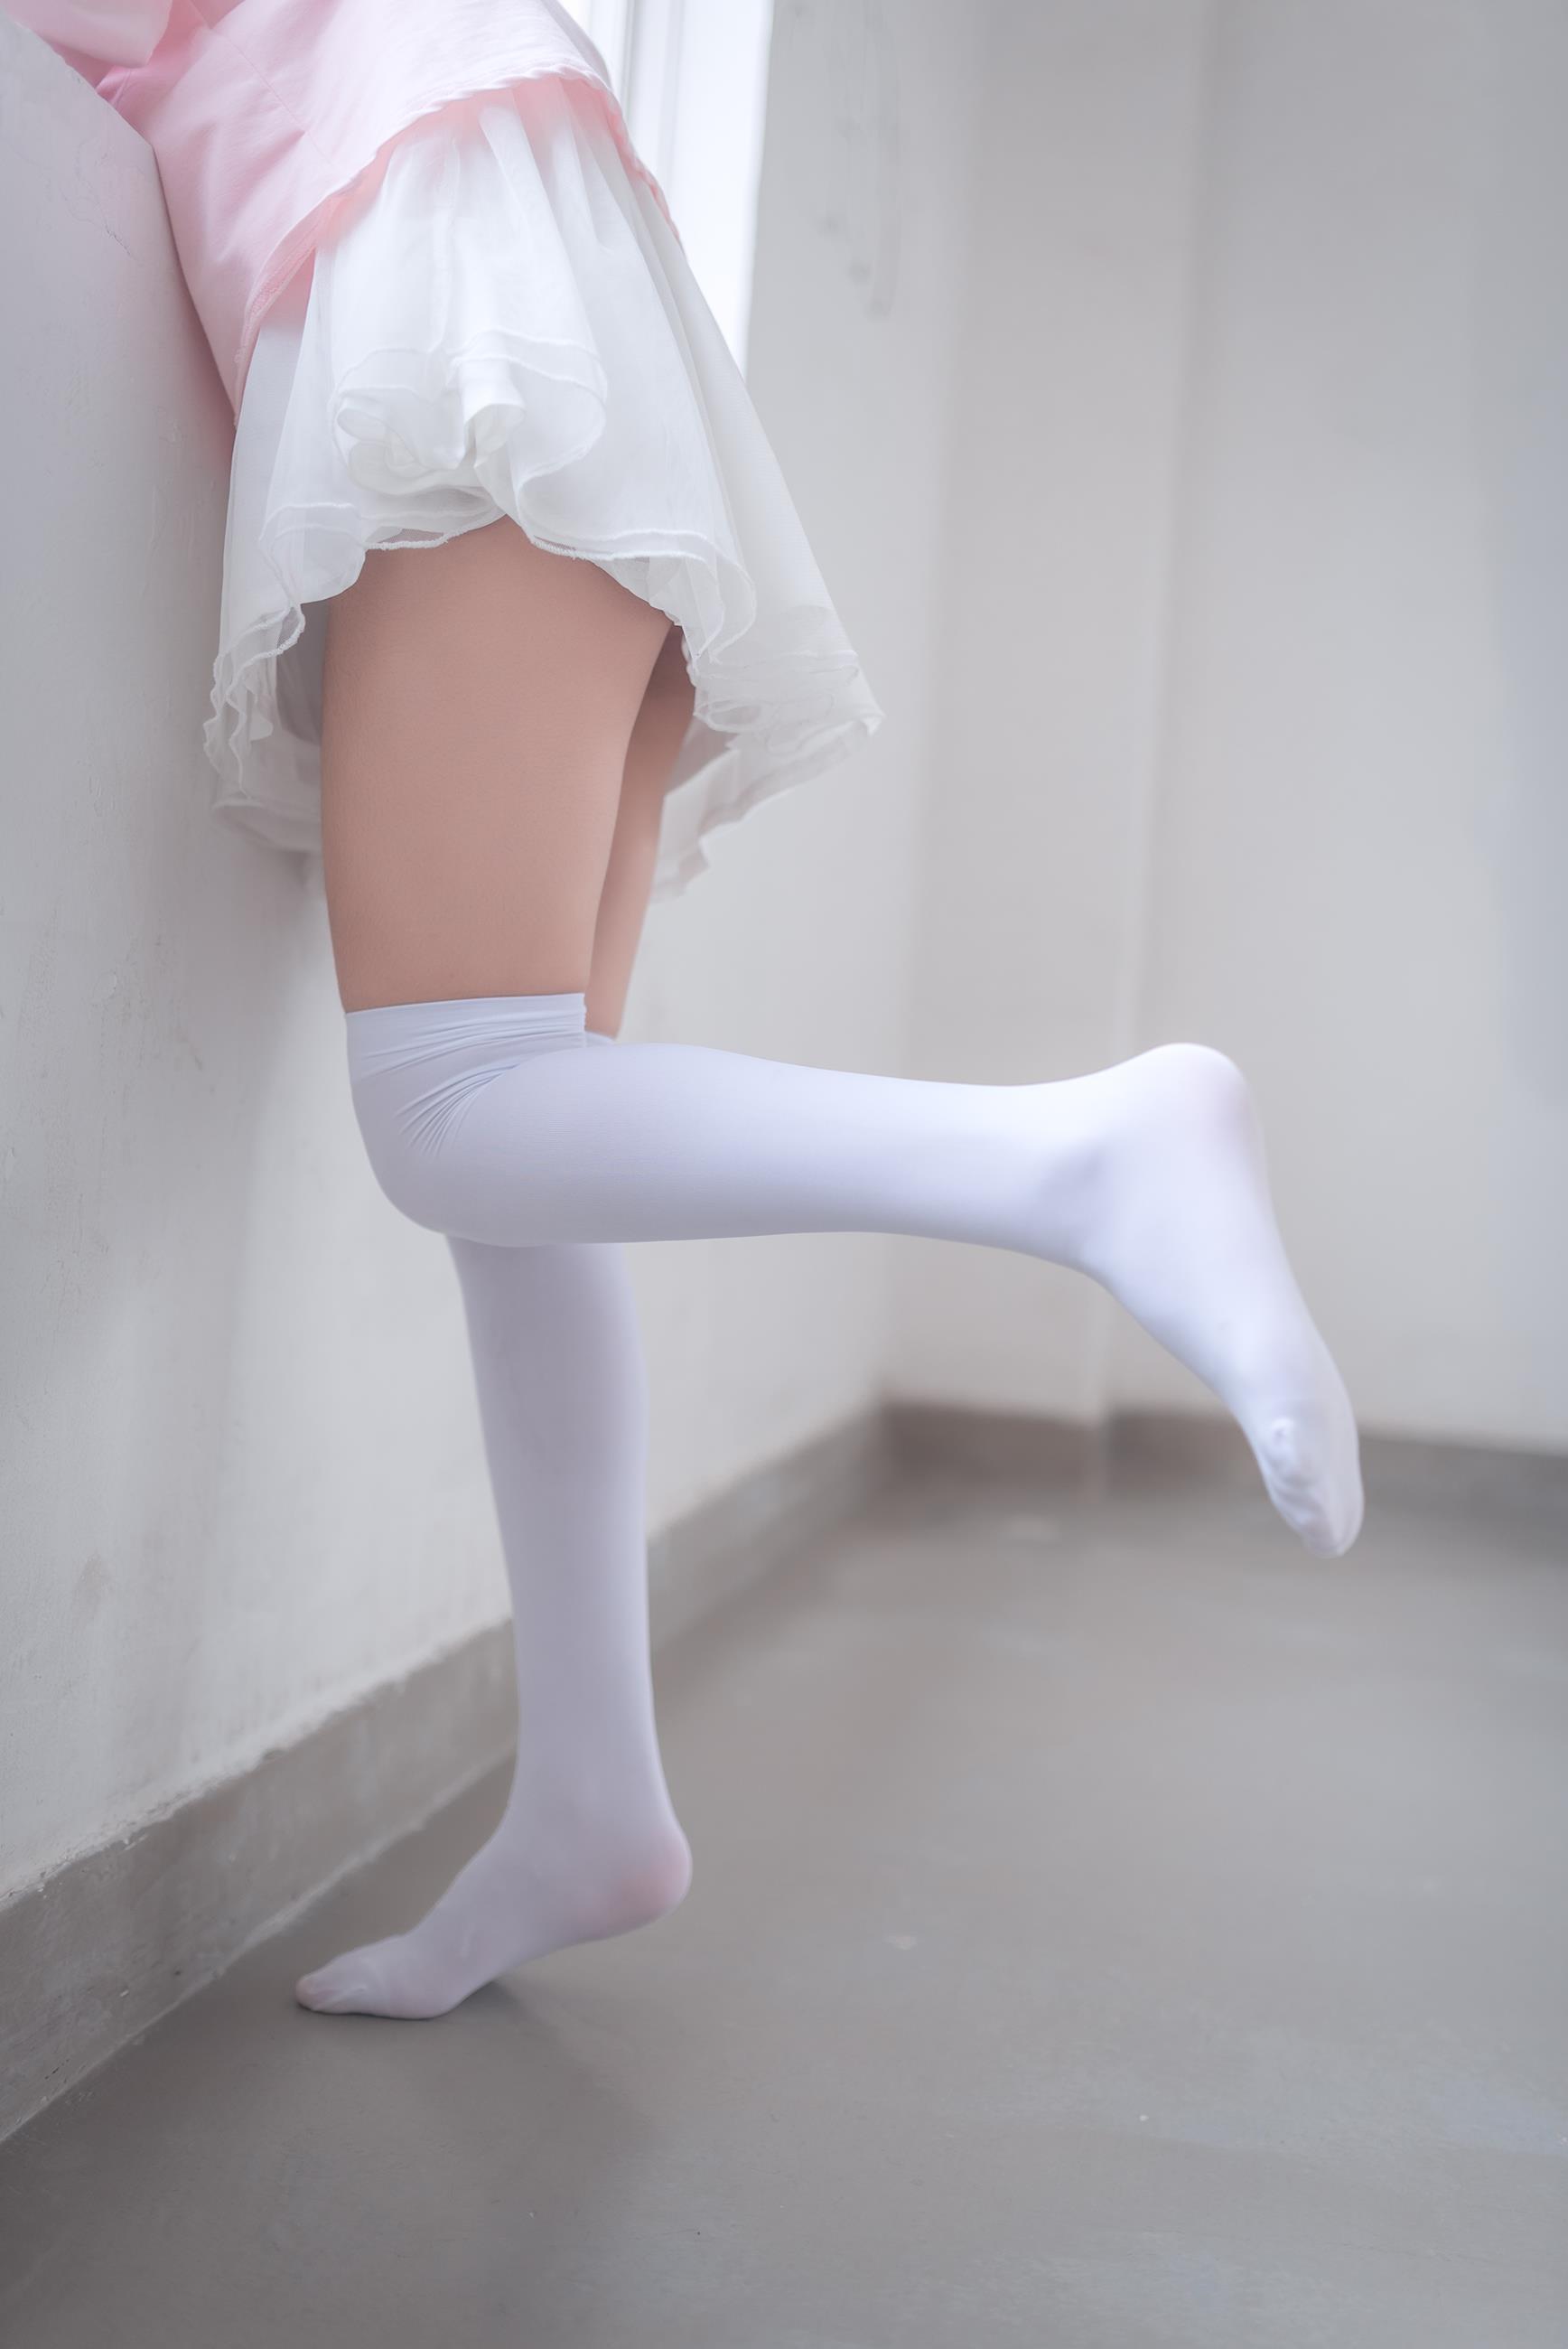 [风之领域]NO.050 性感小萝莉 粉色外套与白色透视短裙加白色丝袜美腿玉足私房写真集,